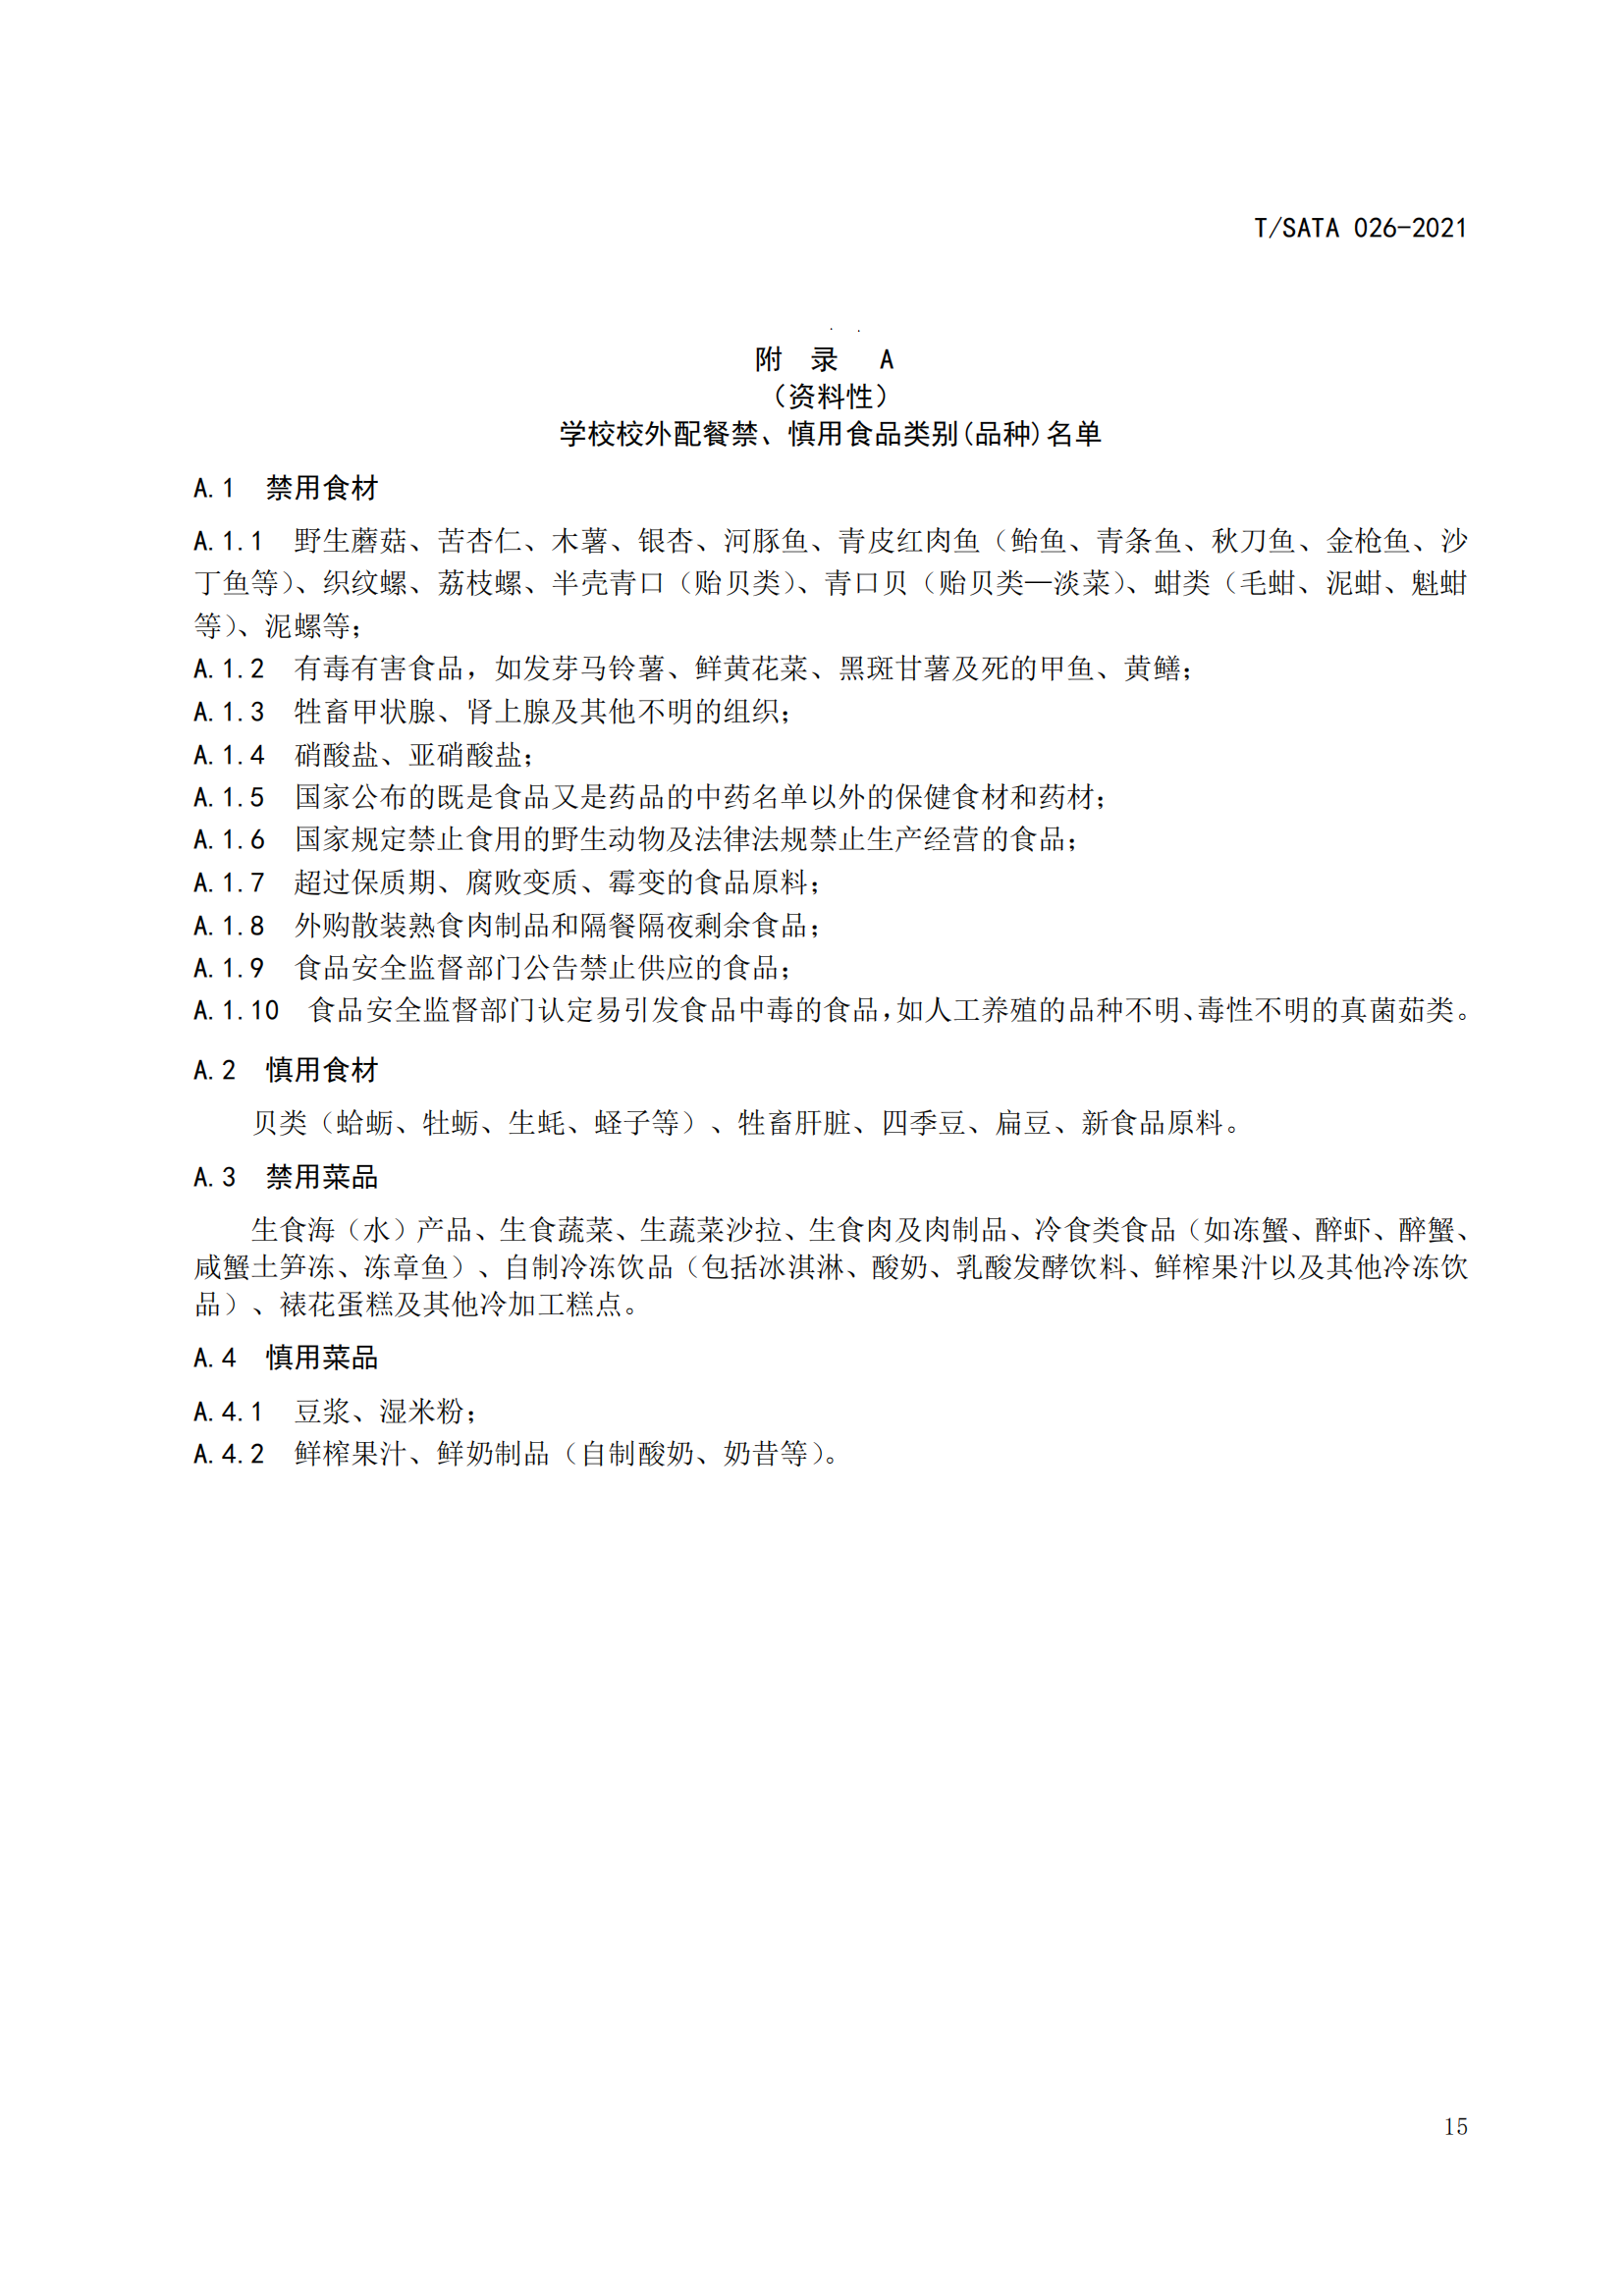 《深圳市校外集中配送学生餐操作规范》团体标准（发布版）2021.11.18终_17.png